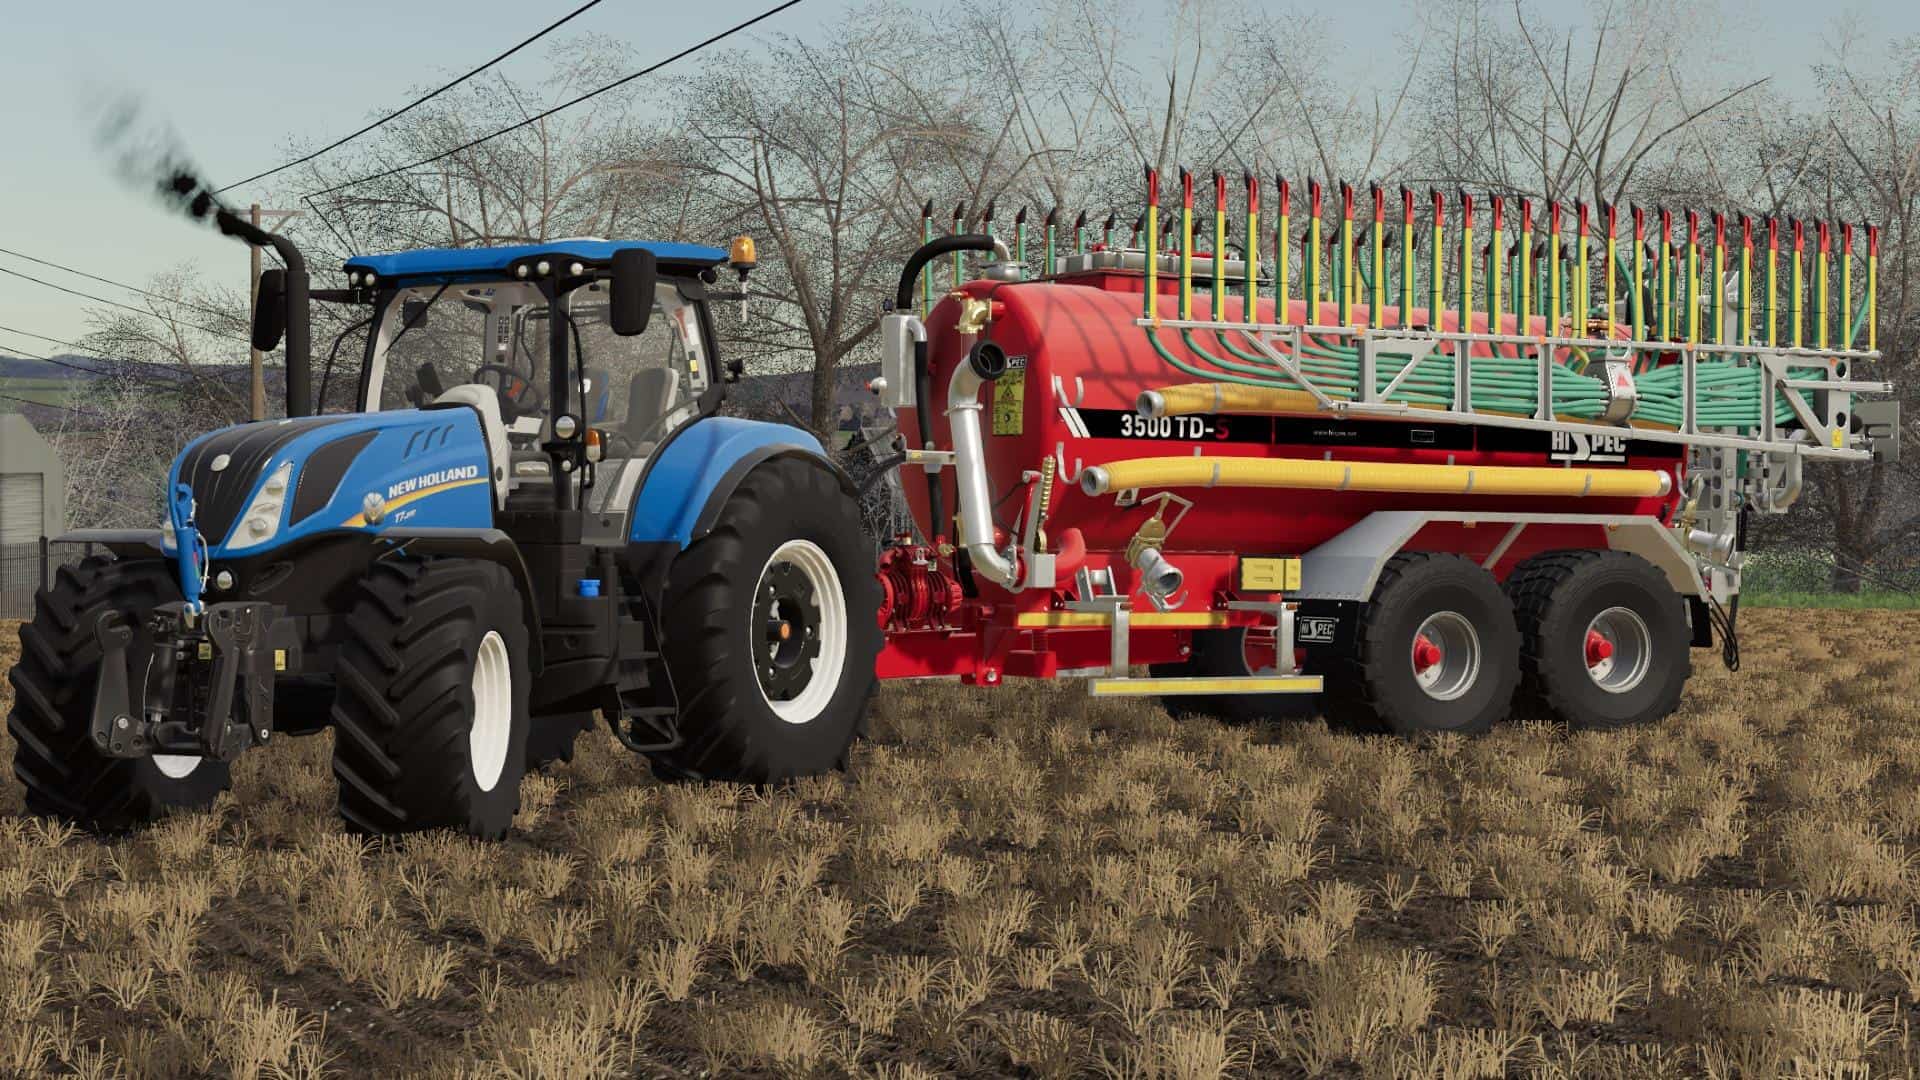 FS 19 Valmet 905 Tractor v1.0 - Farming Simulator 19 mod 